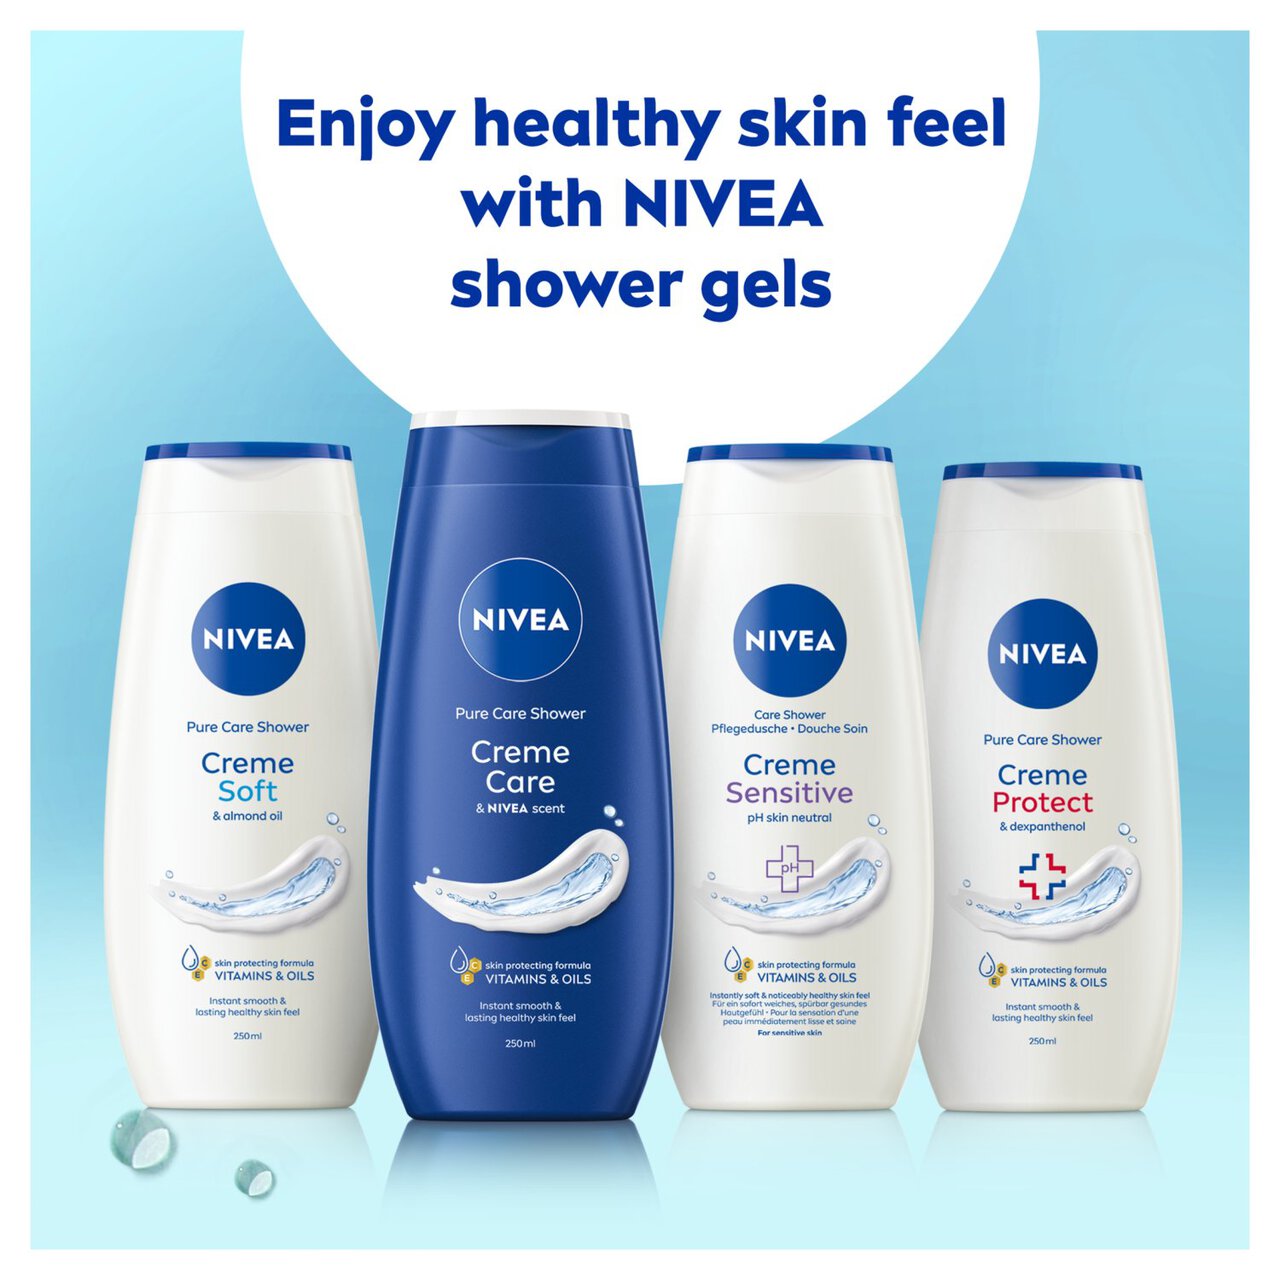 NIVEA Creme Care Shower Cream 250ml